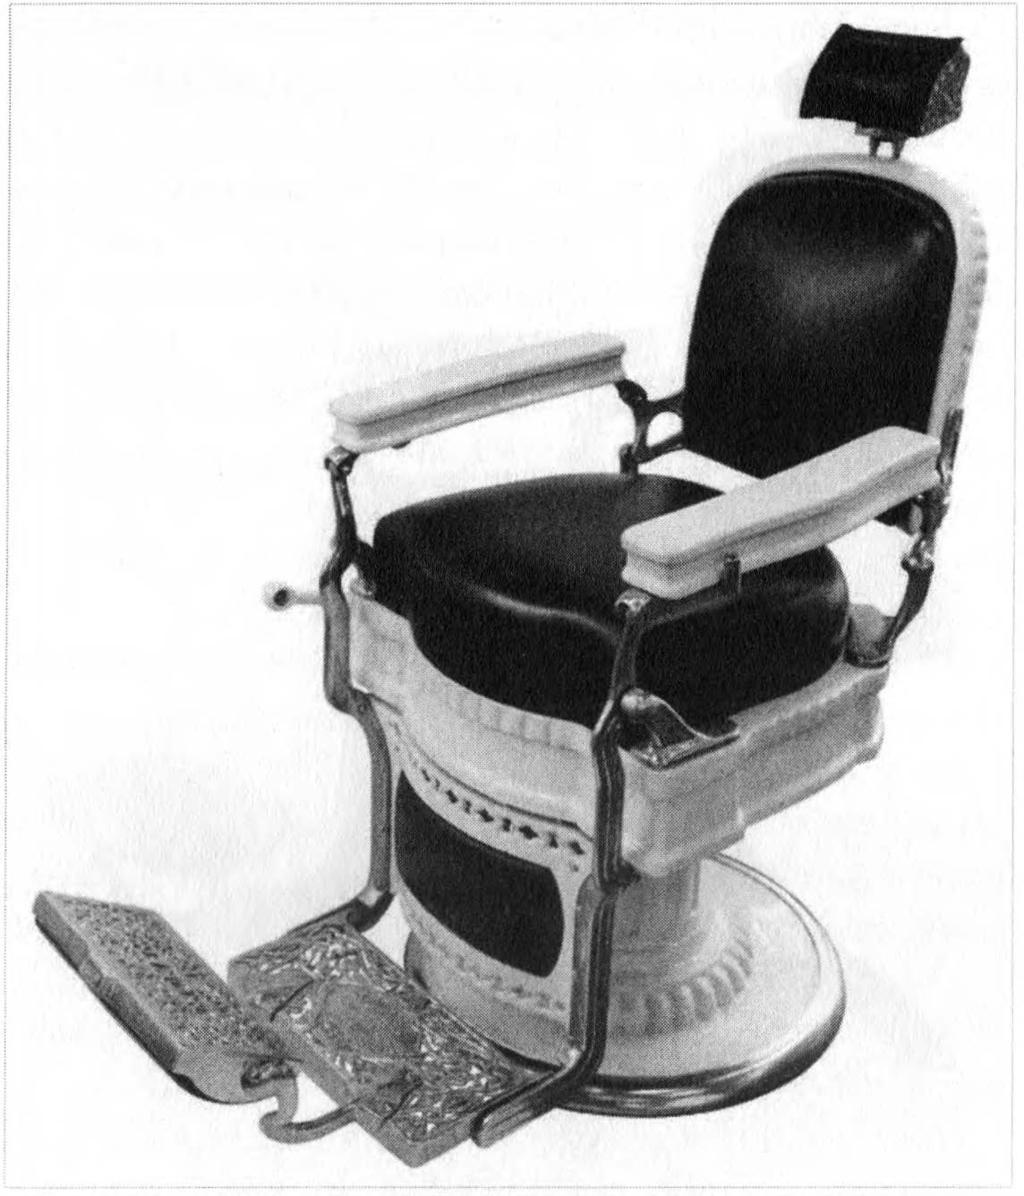 190 Resim 5: 1930'1ardan Koken marka klinik görünümlü bir berber koltuğu. ran çocuğun doğru yükseklikte oturması ve korkmaması.